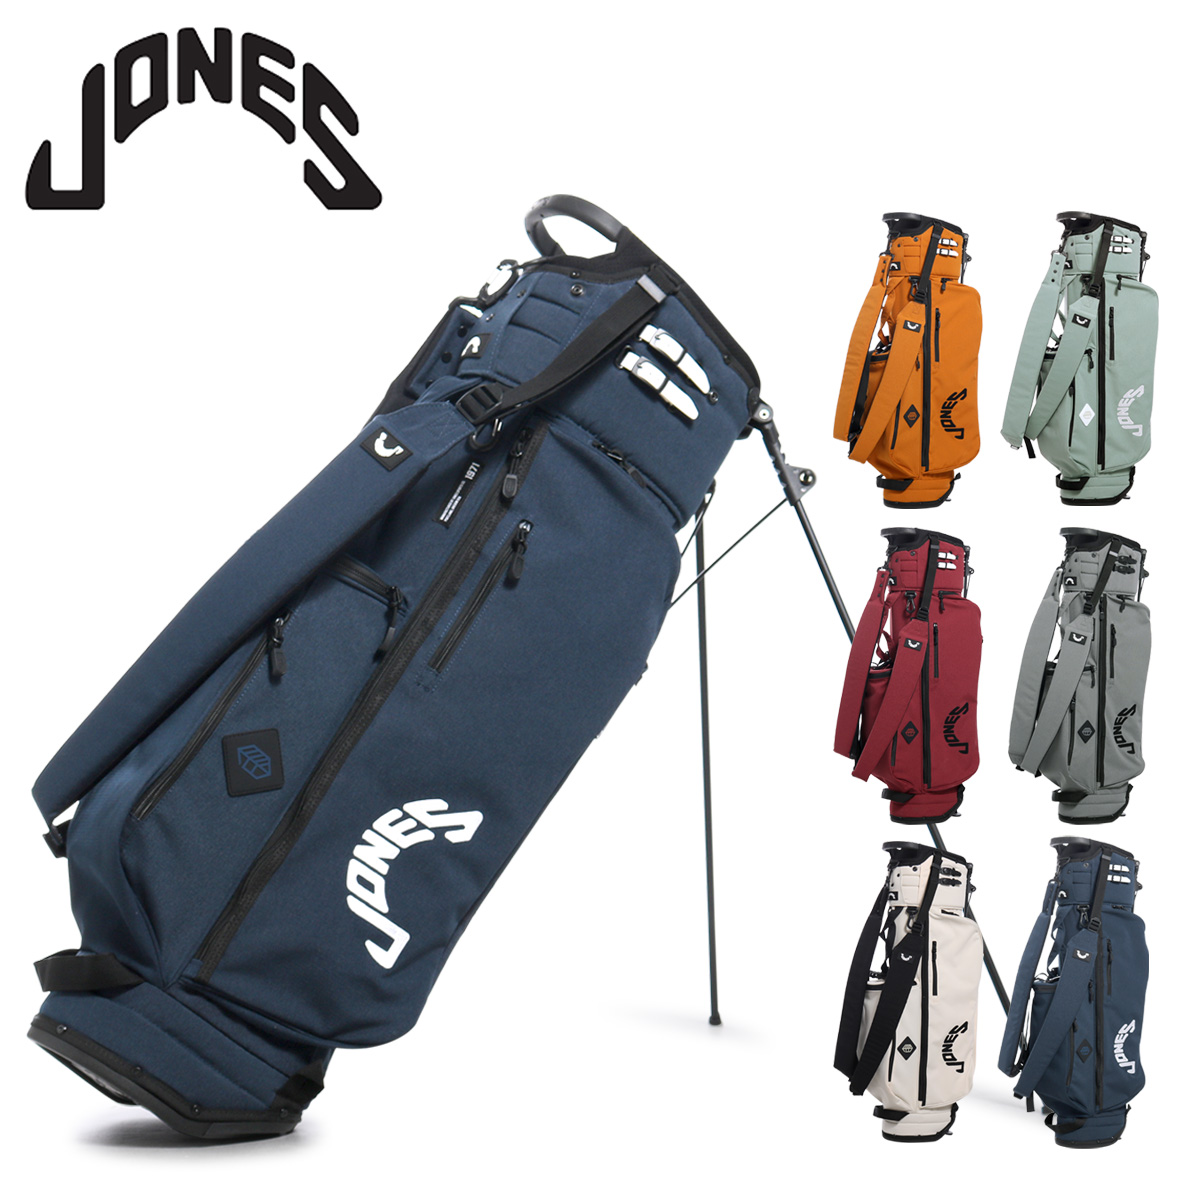 ジョーンズ ゴルフ キャディバッグ スタンド型 5分割 9型 46インチ 2.6kg トゥルーパー メンズ JONES TROUPER-R 軽量  保冷ポケット